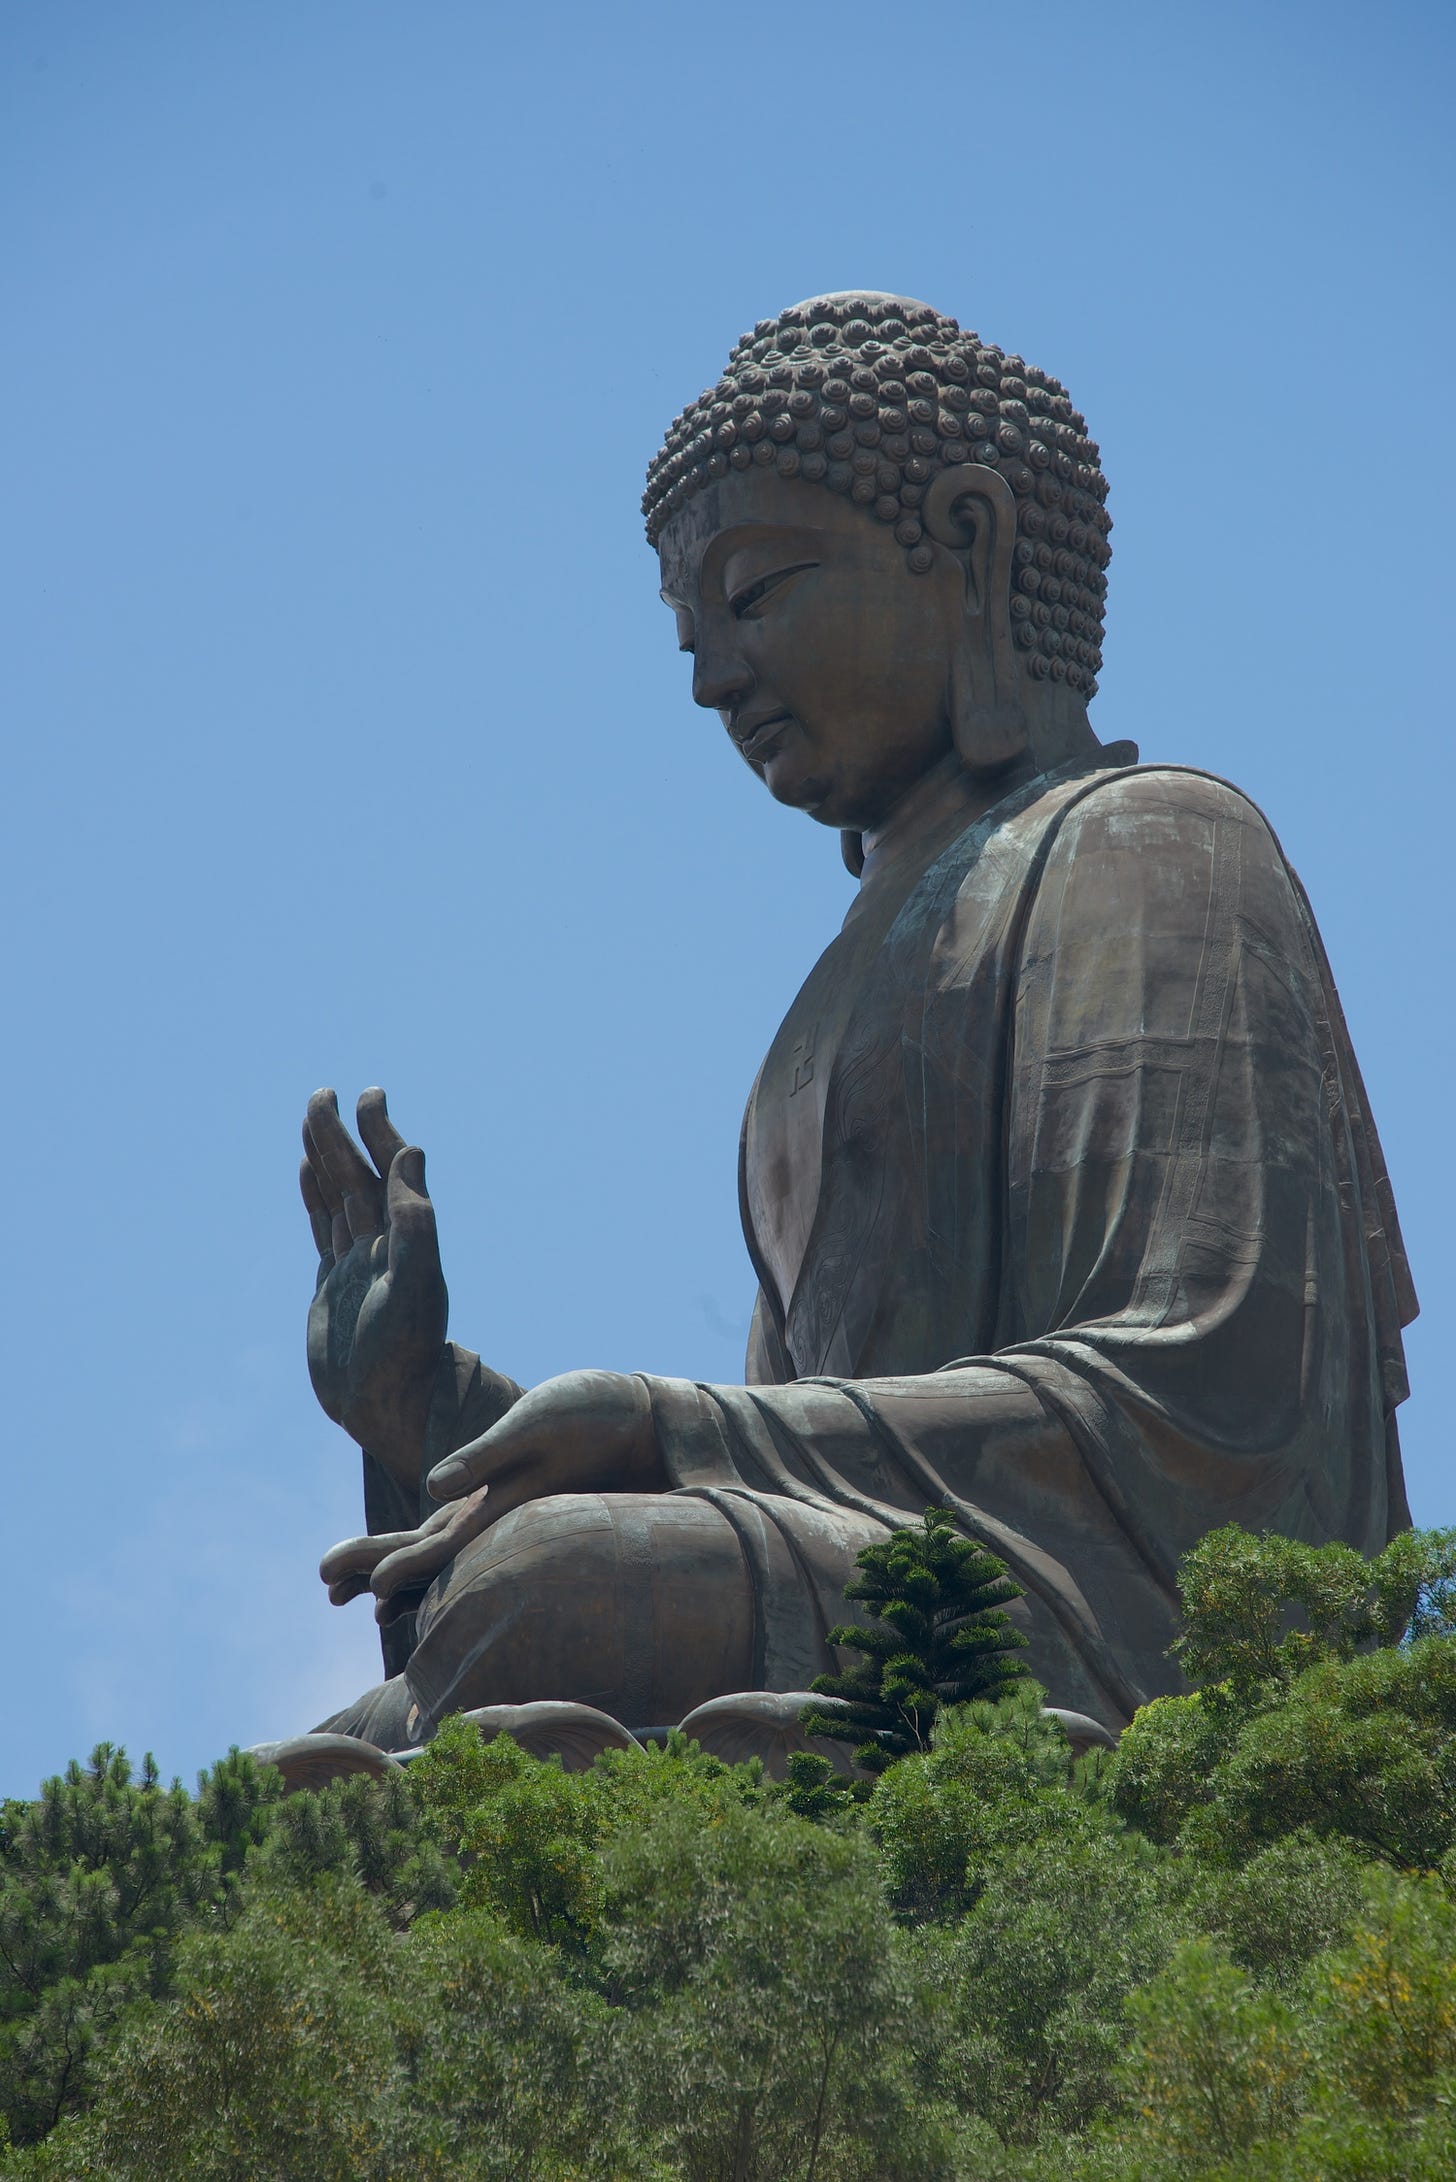 Big Buddha in profile